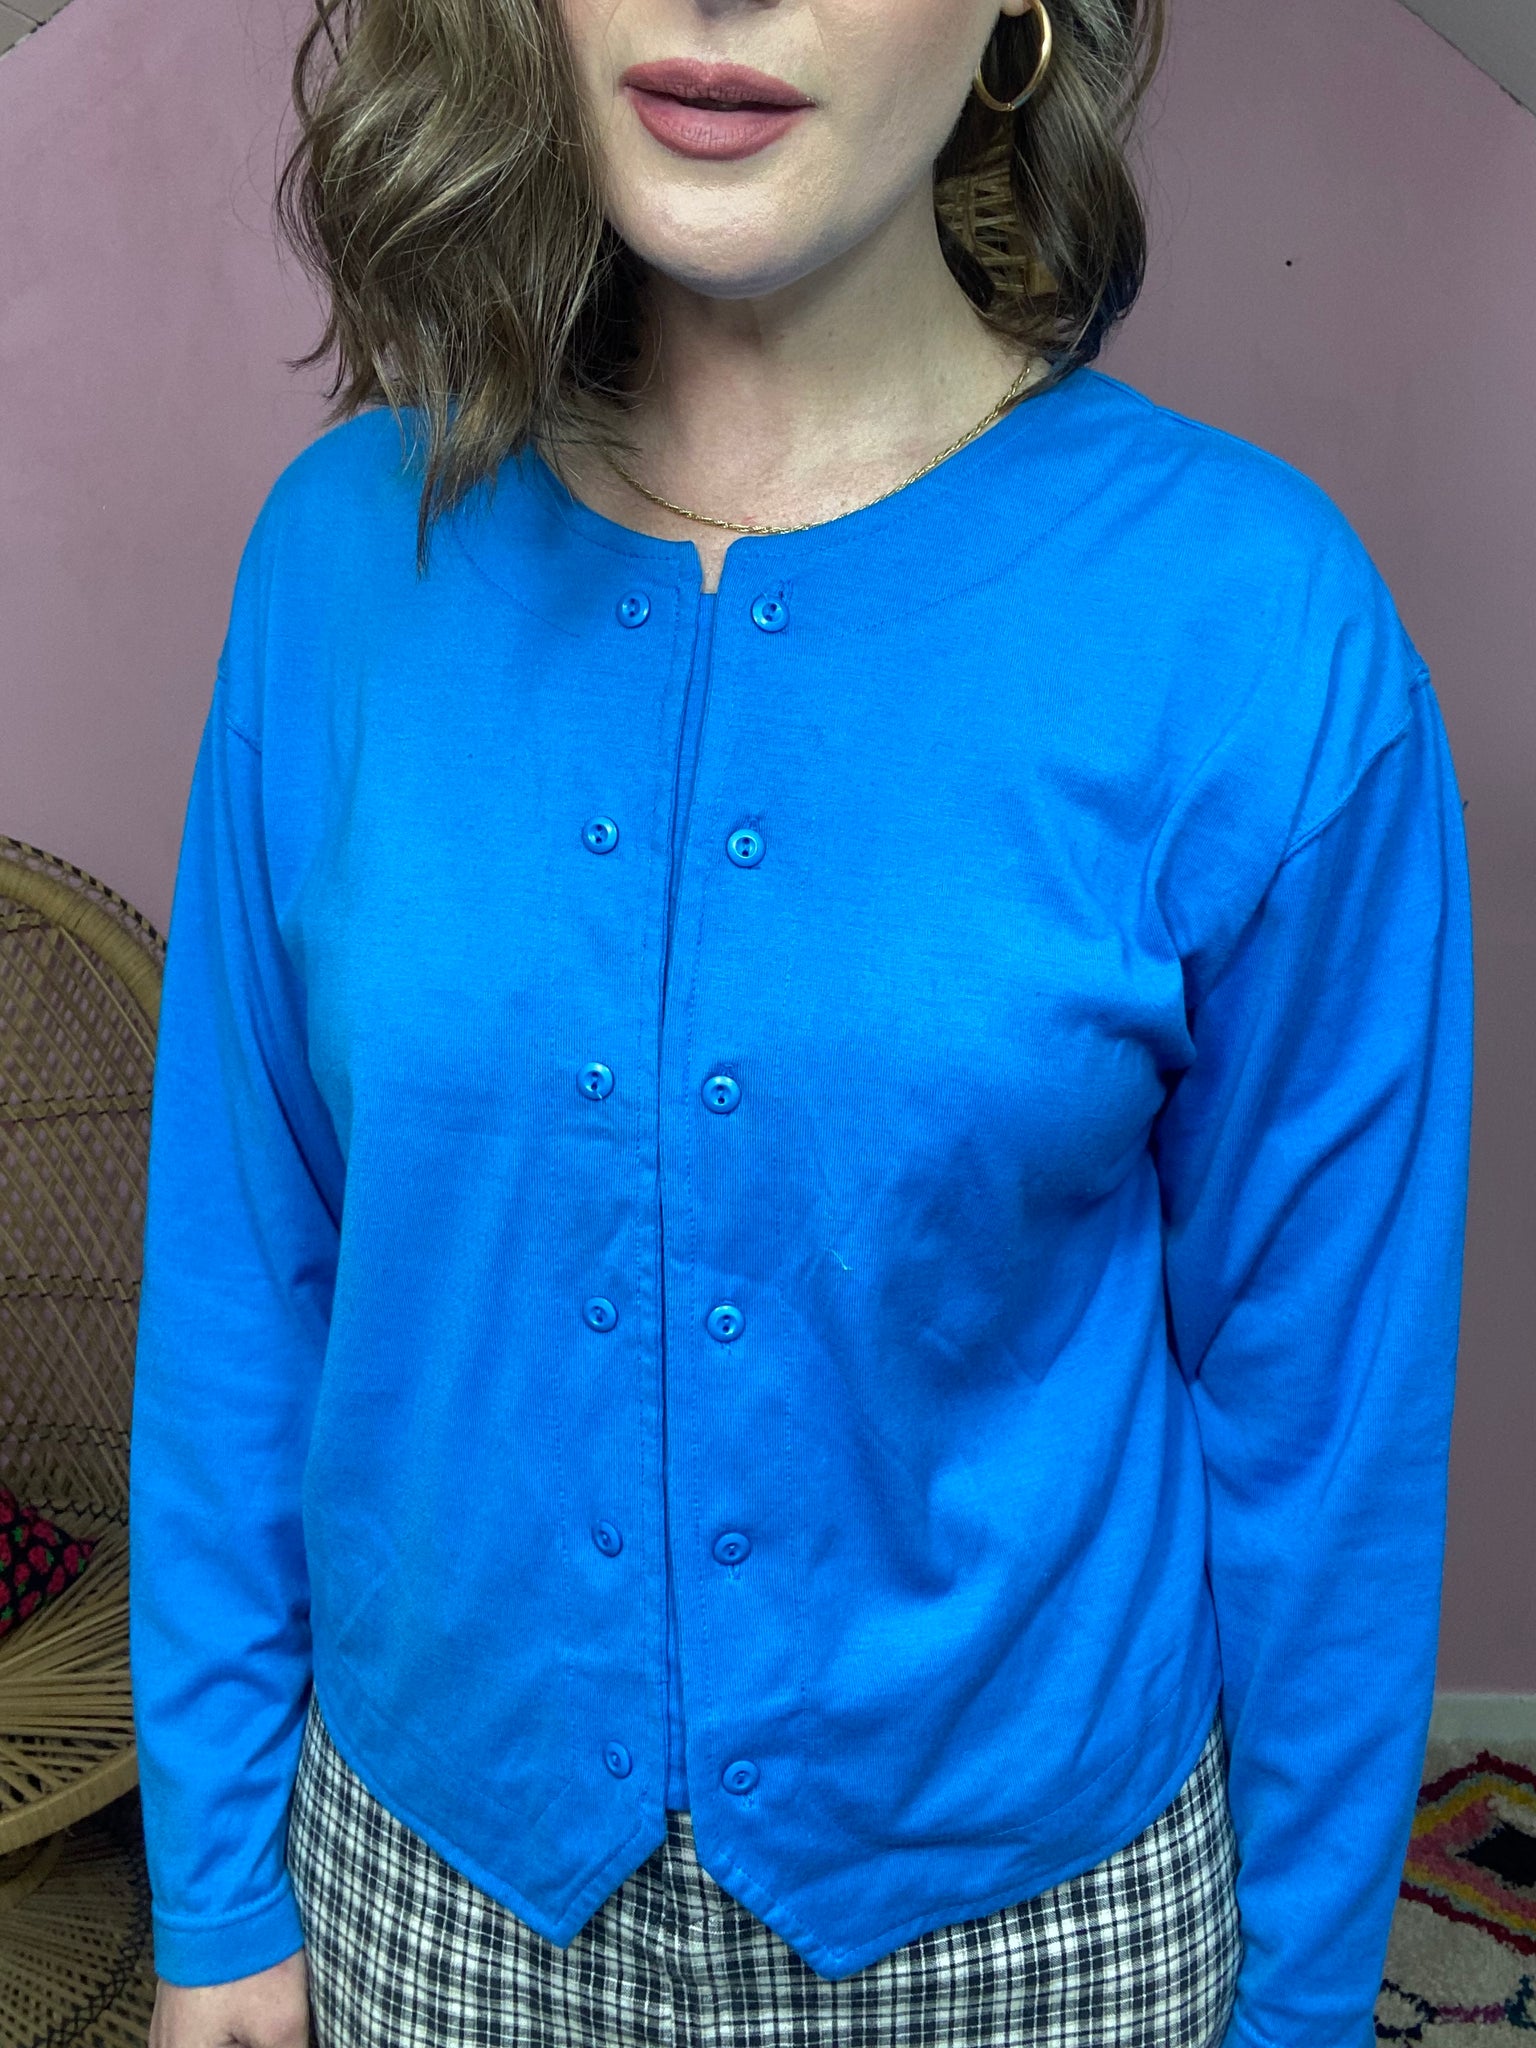 90s Turquoise TShirt